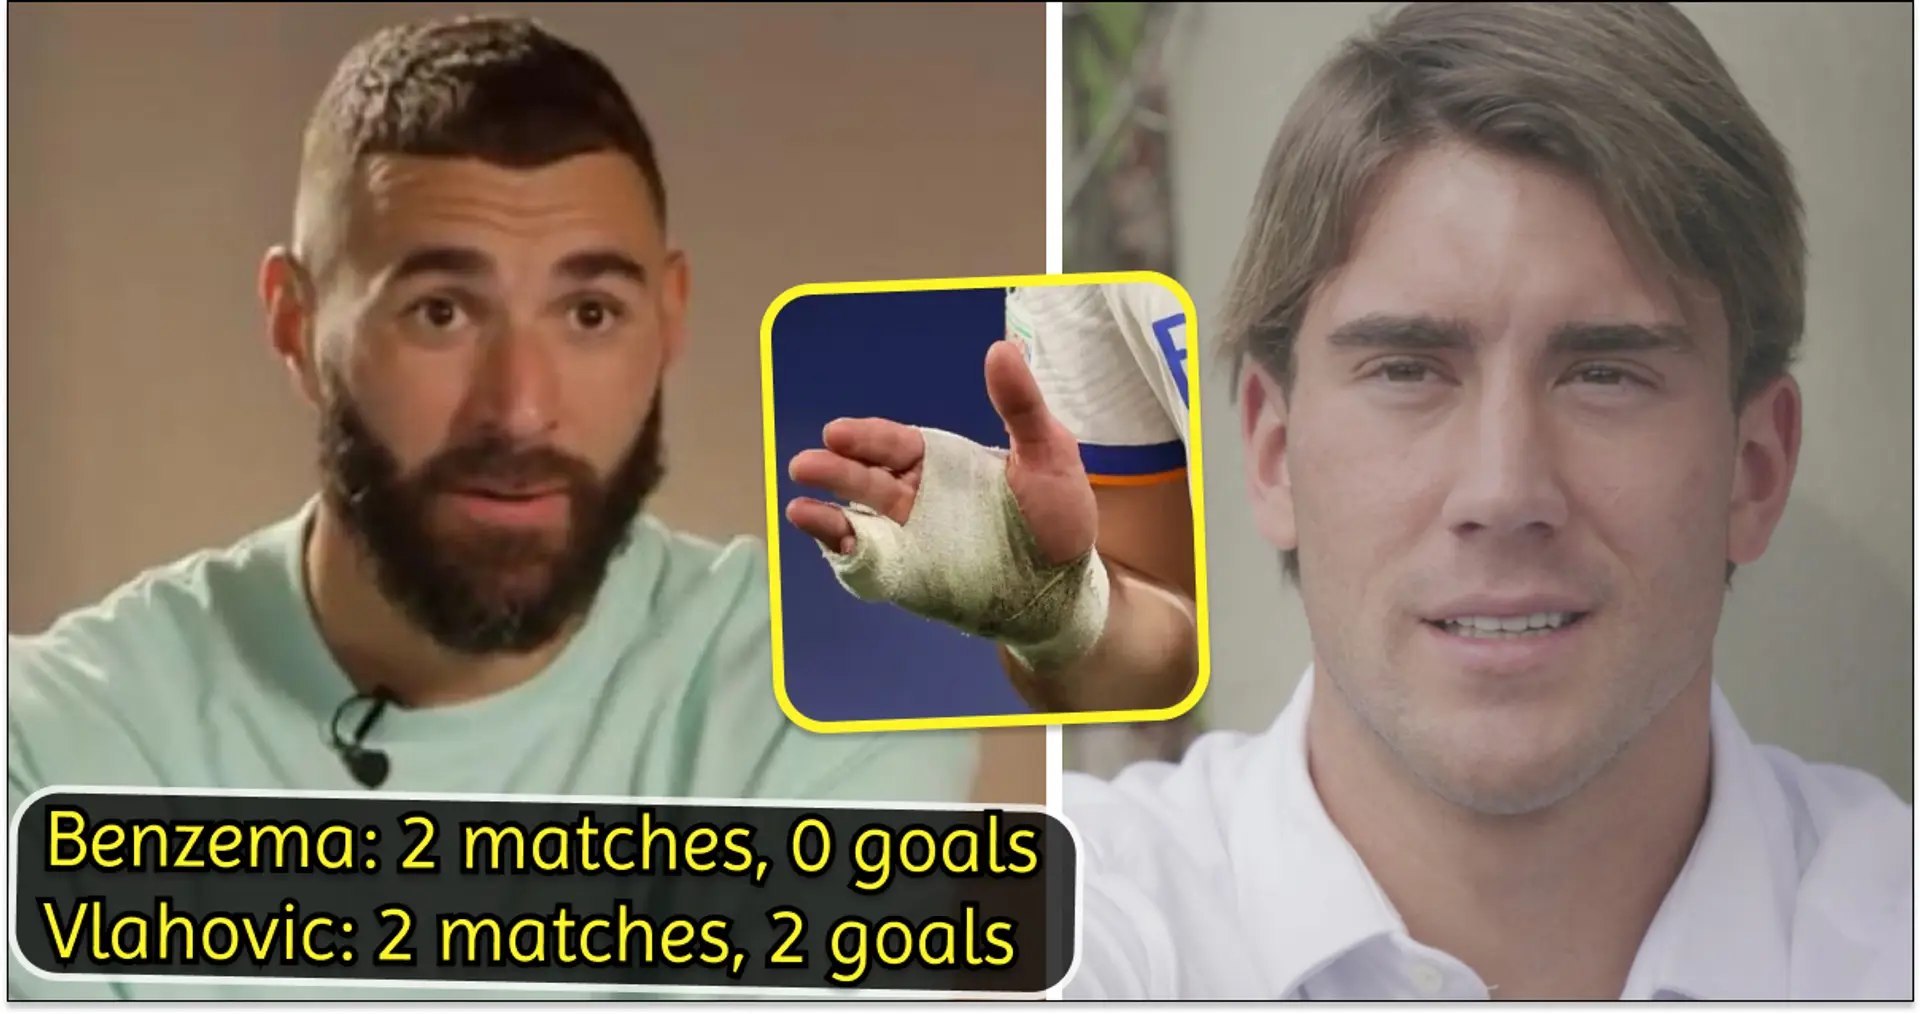 Un fan suggère que Dusan Vlahovic "a volé les superpouvoirs de Benzema" - cela a à voir avec le bandage à la main de Karim